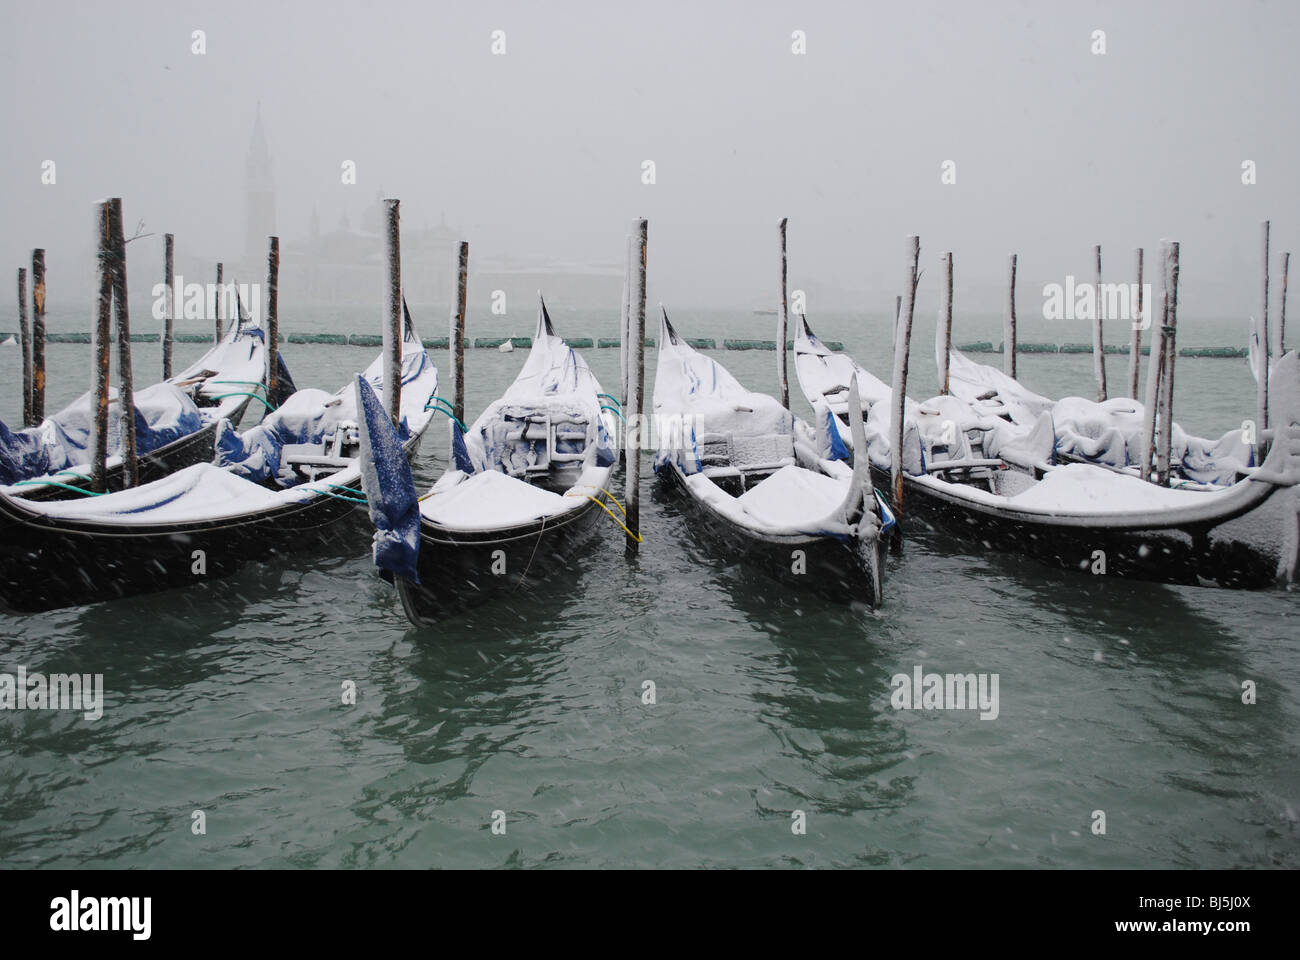 Gondole nella neve, Canale della Giudecca, La Piazzetta, Venezia, Italia Foto Stock